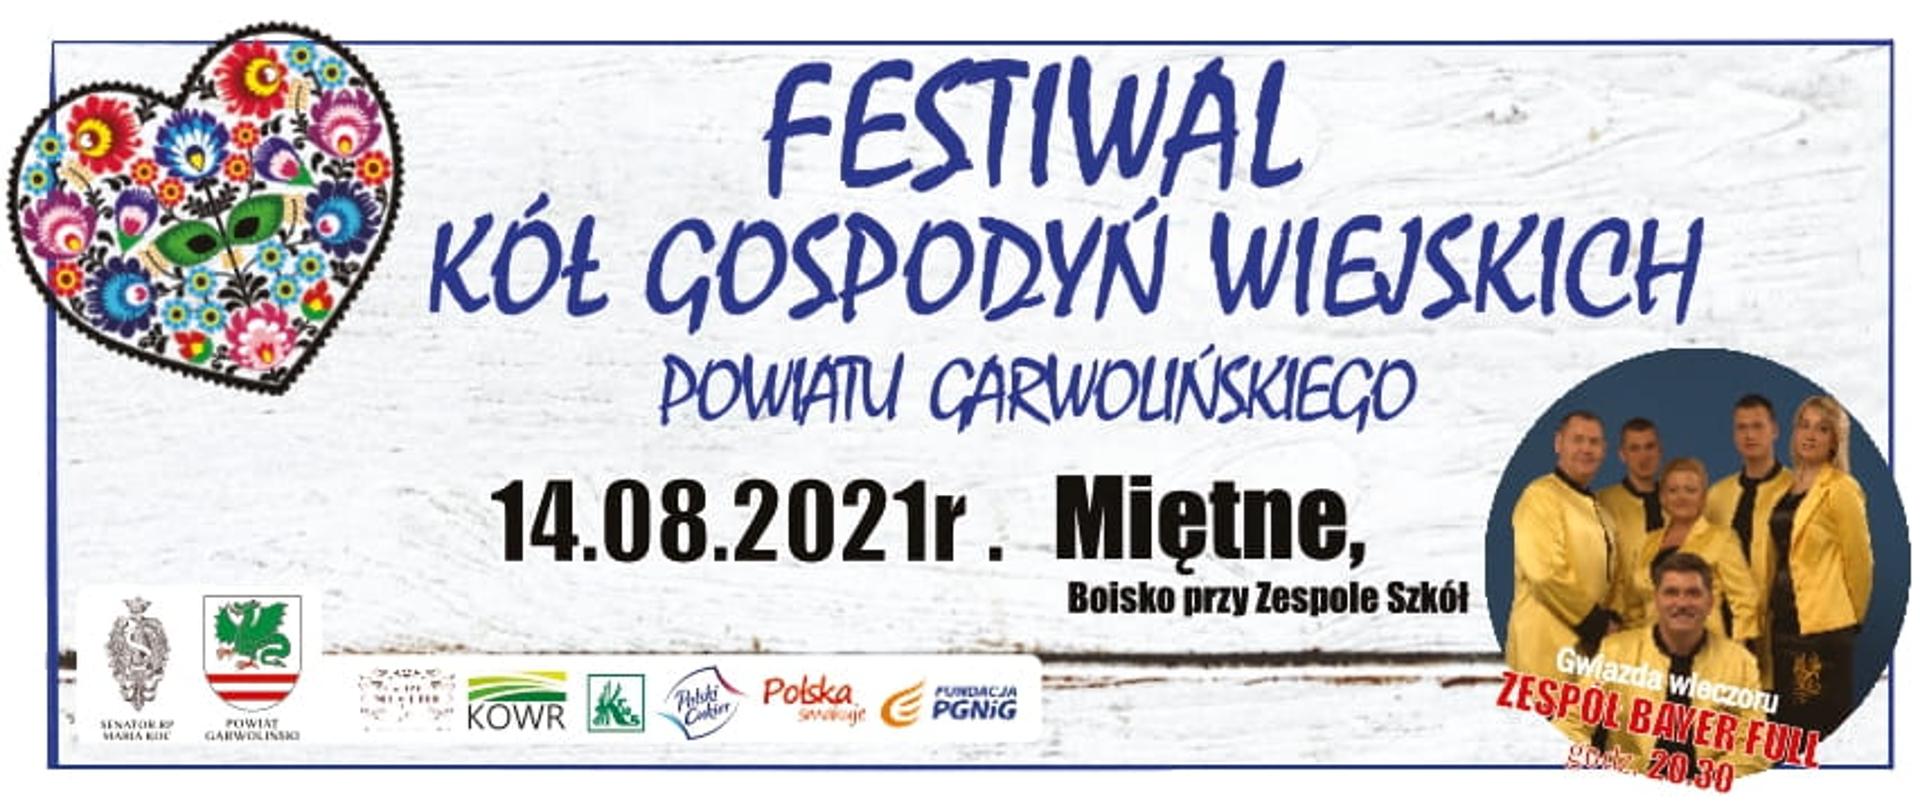 Festiwal KGW Powiatu Garwolińskiego - zapowiedź wydarzenia